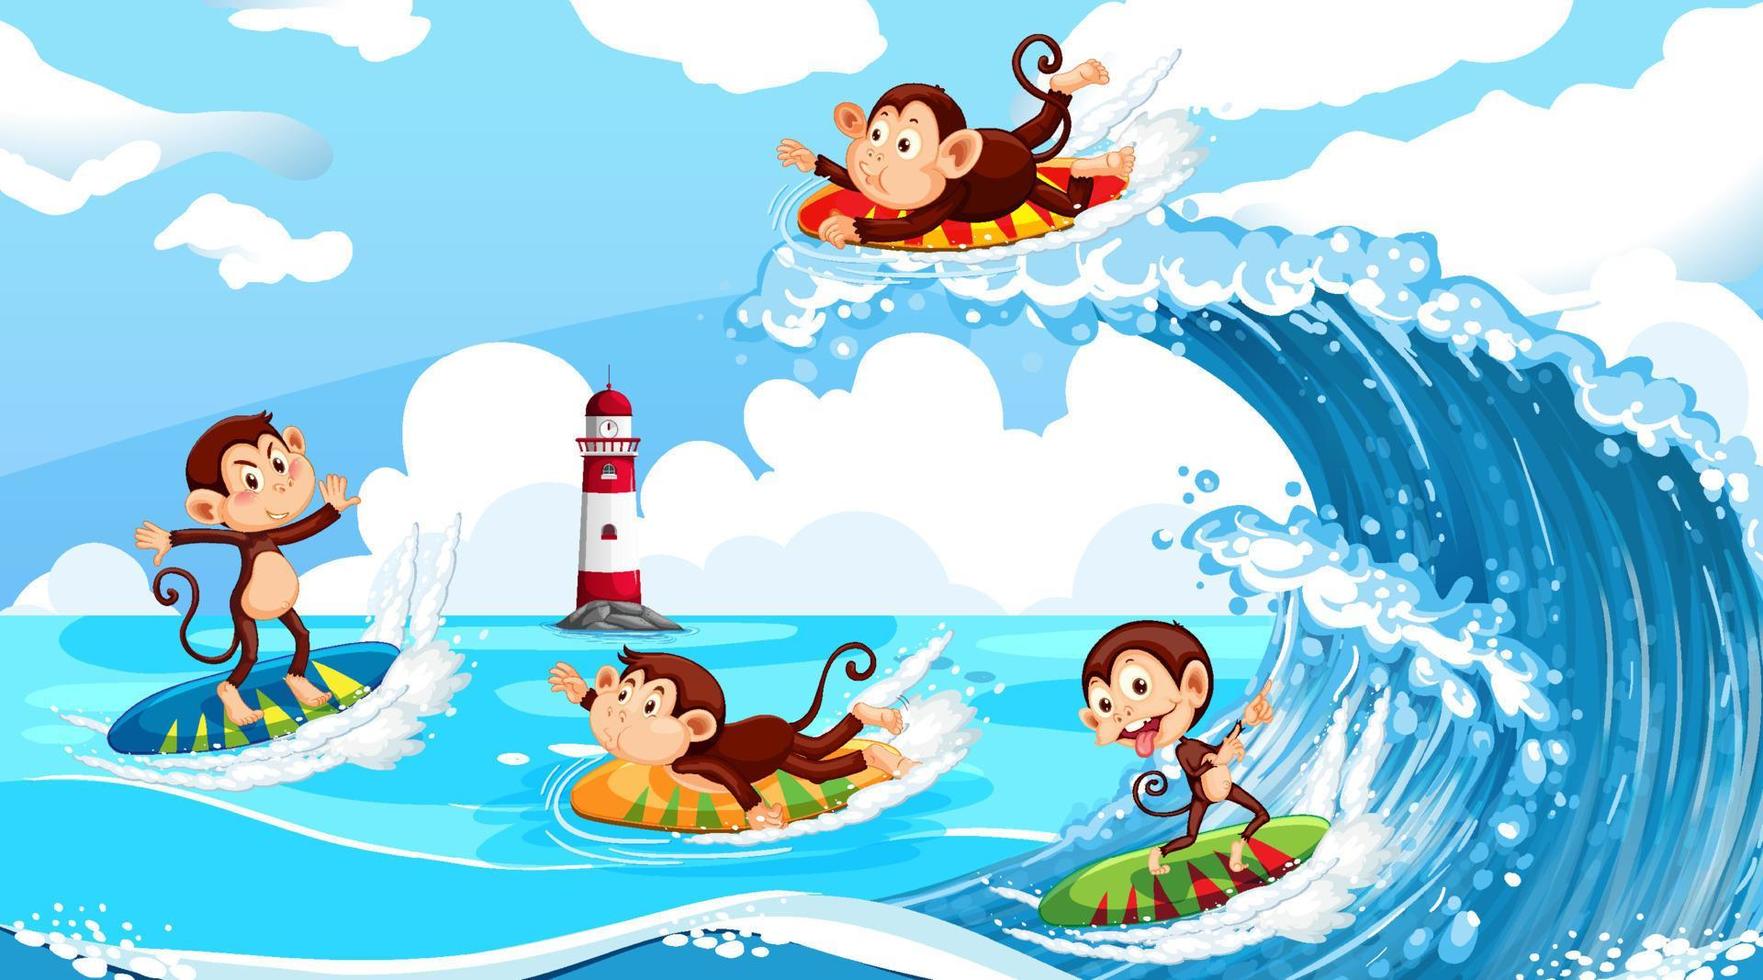 Beach scene with monkeys doing different activities vector